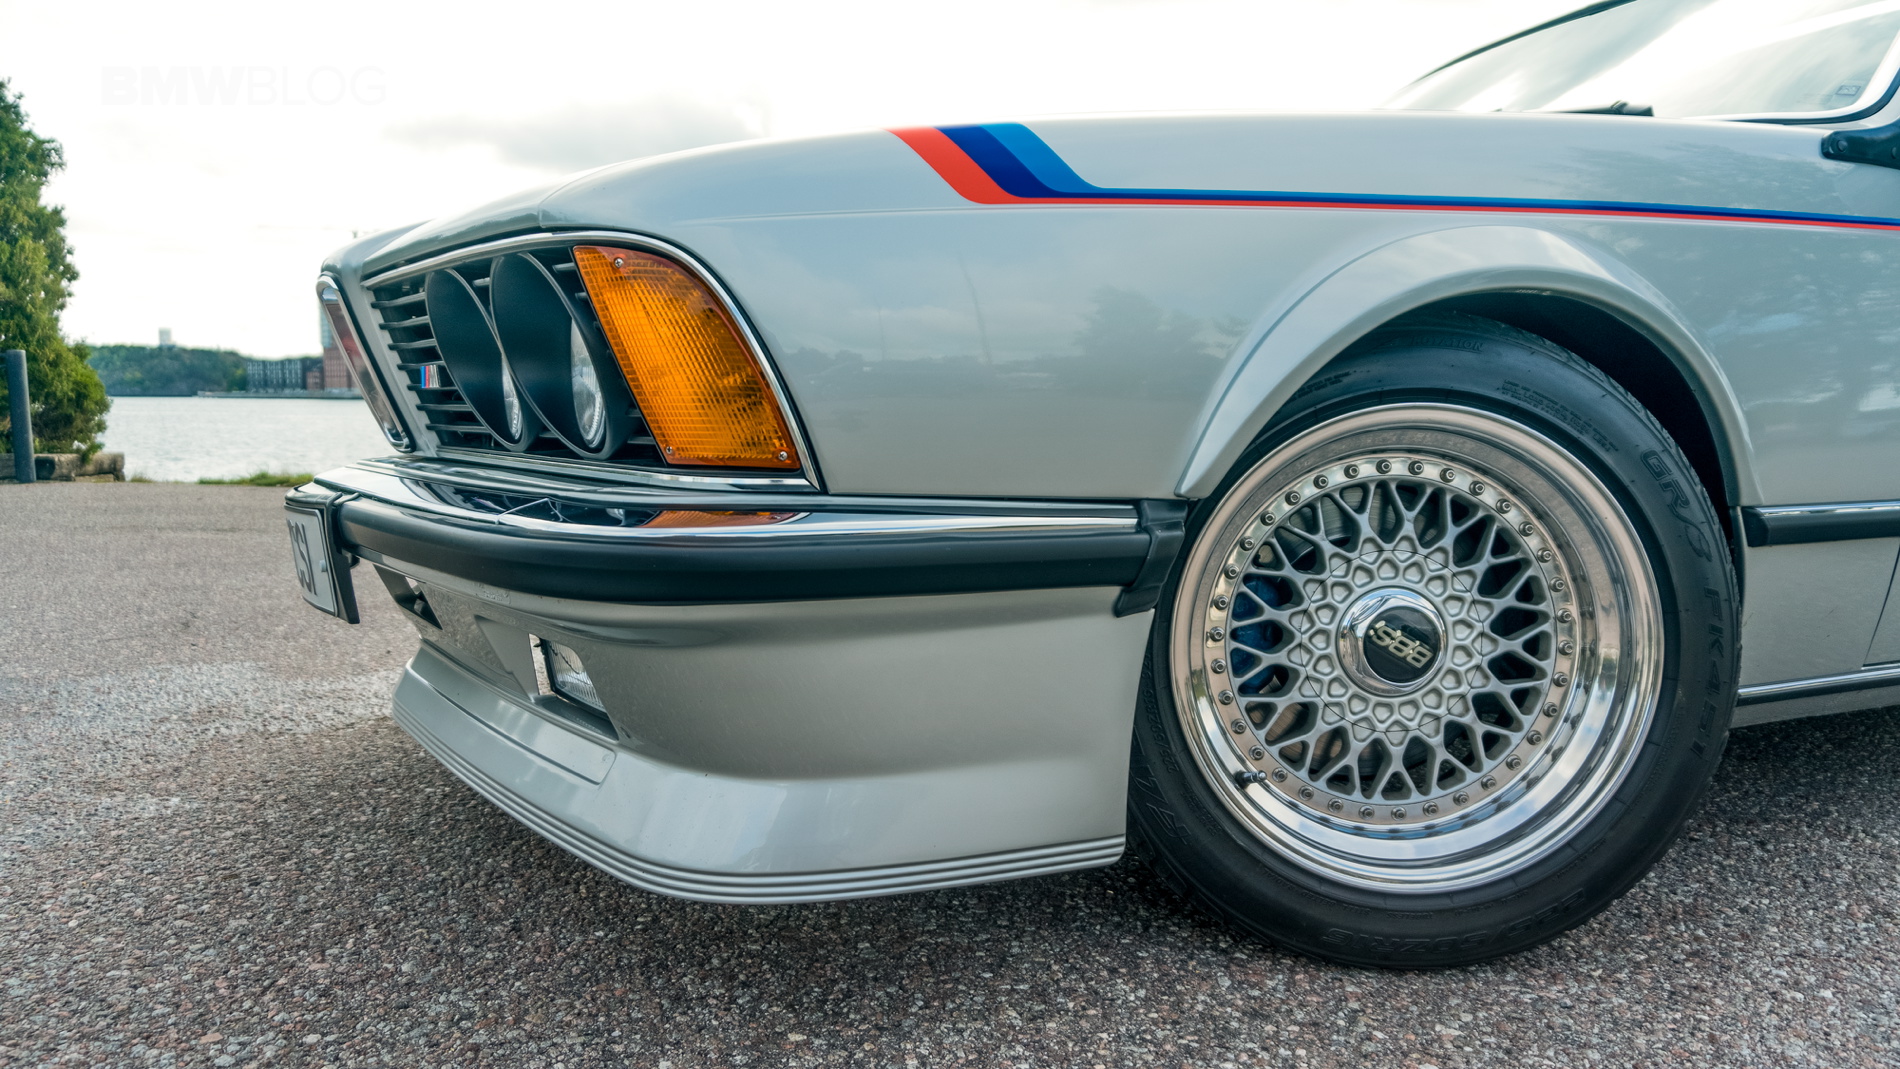 A classic restored BMW M635CSi